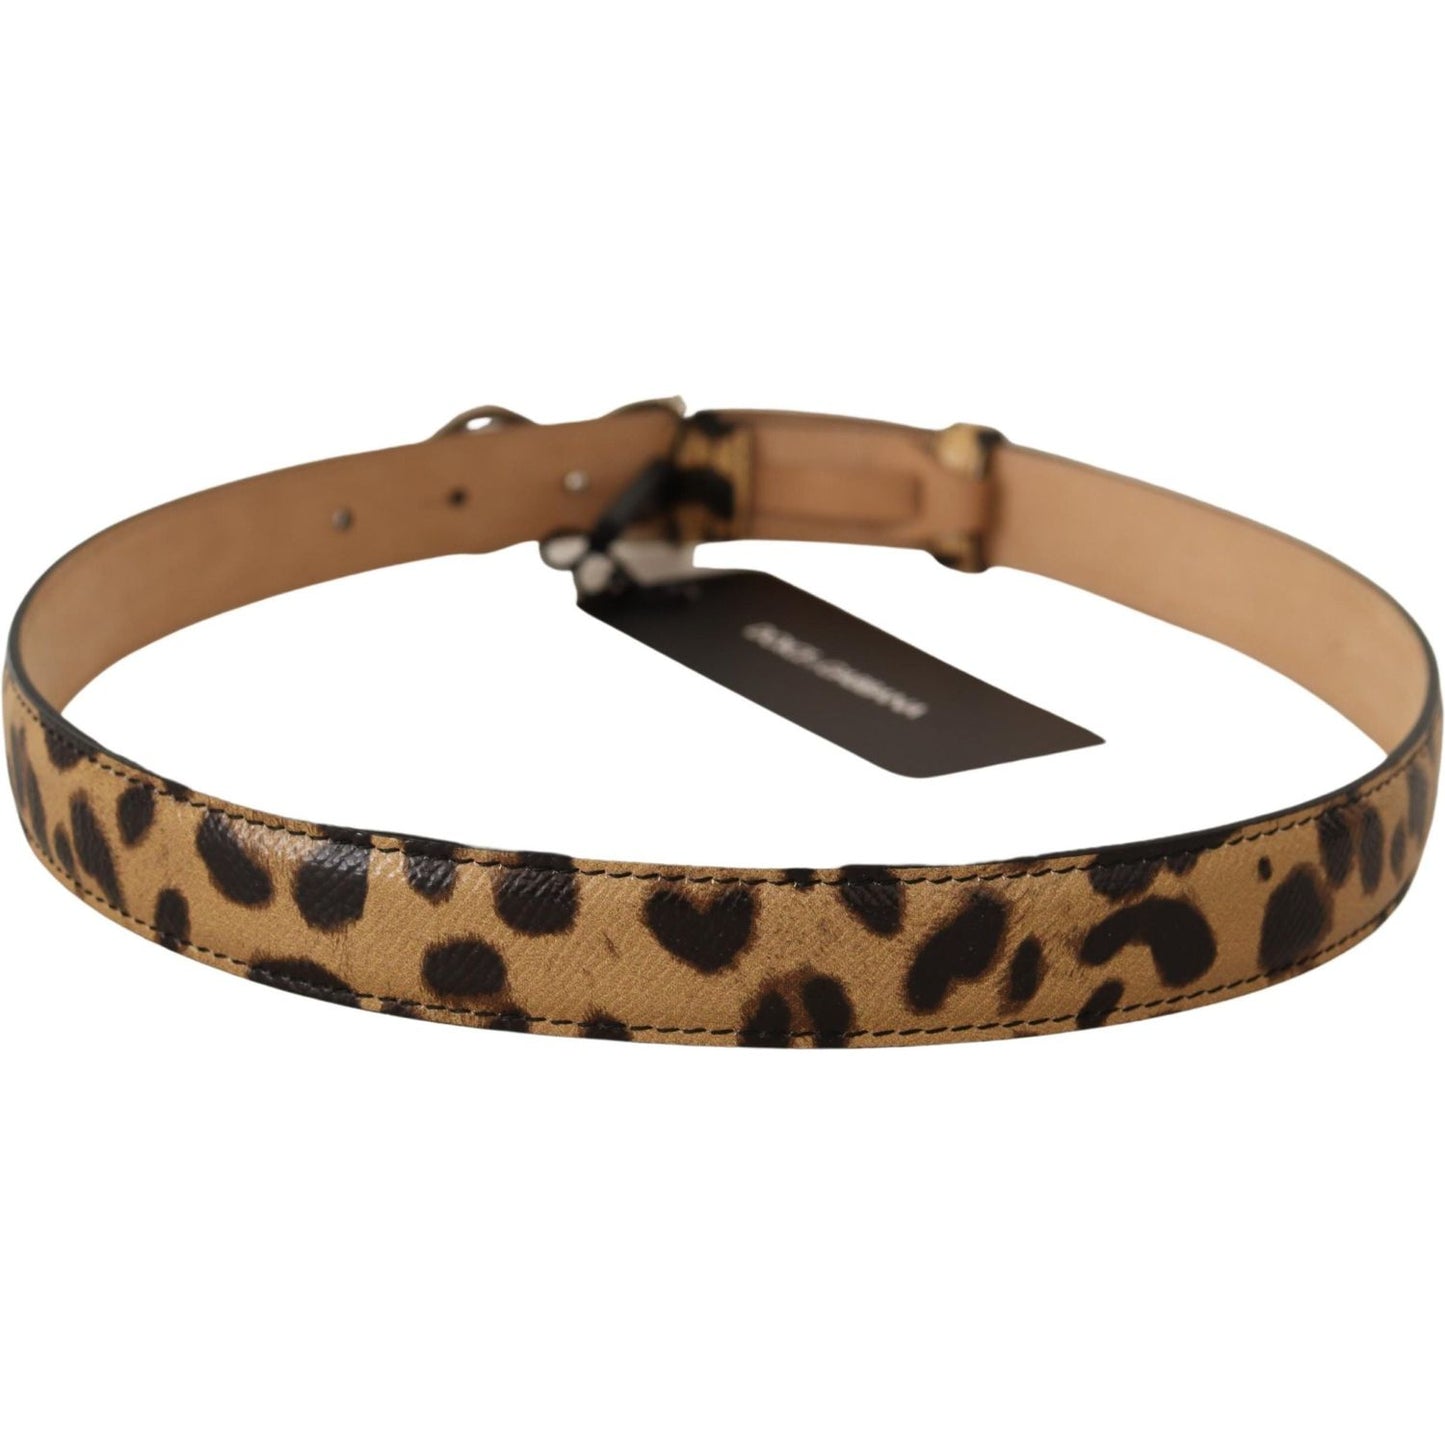 Dolce & Gabbana Elegant Crystal-Embellished Leopard Belt brown-leopard-leather-dg-crystals-buckle-belt IMG_1403-scaled-e3188dde-aa1.jpg